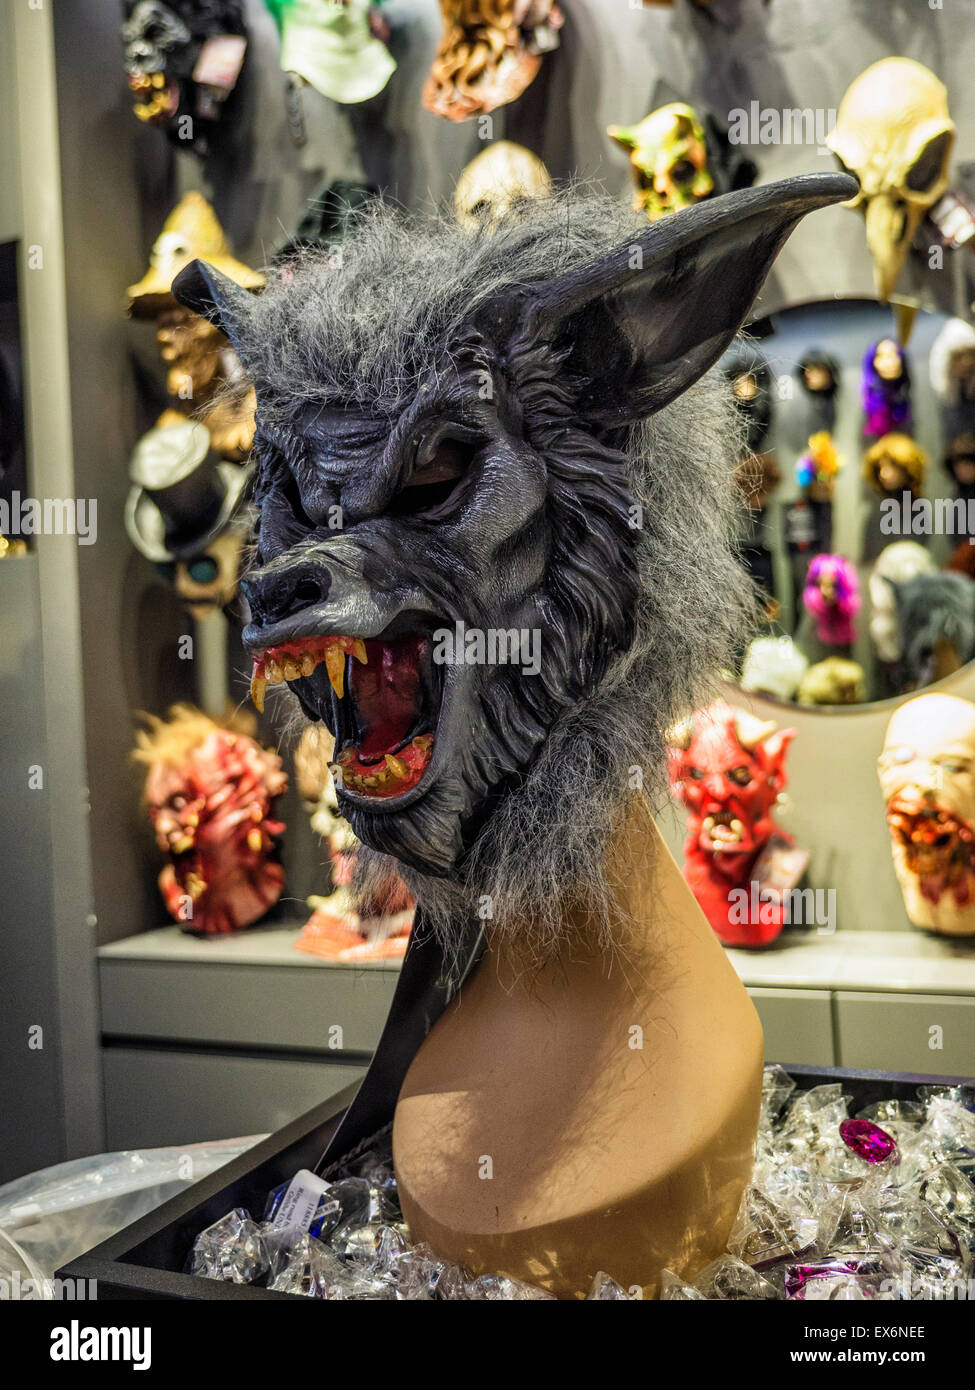 Berlin ausgefallener, furchterregende Maske zu speichern, Verkauf Masken, Kostüme Outfits, Maskerade-Kostüme Zubehör Stockfotografie Alamy